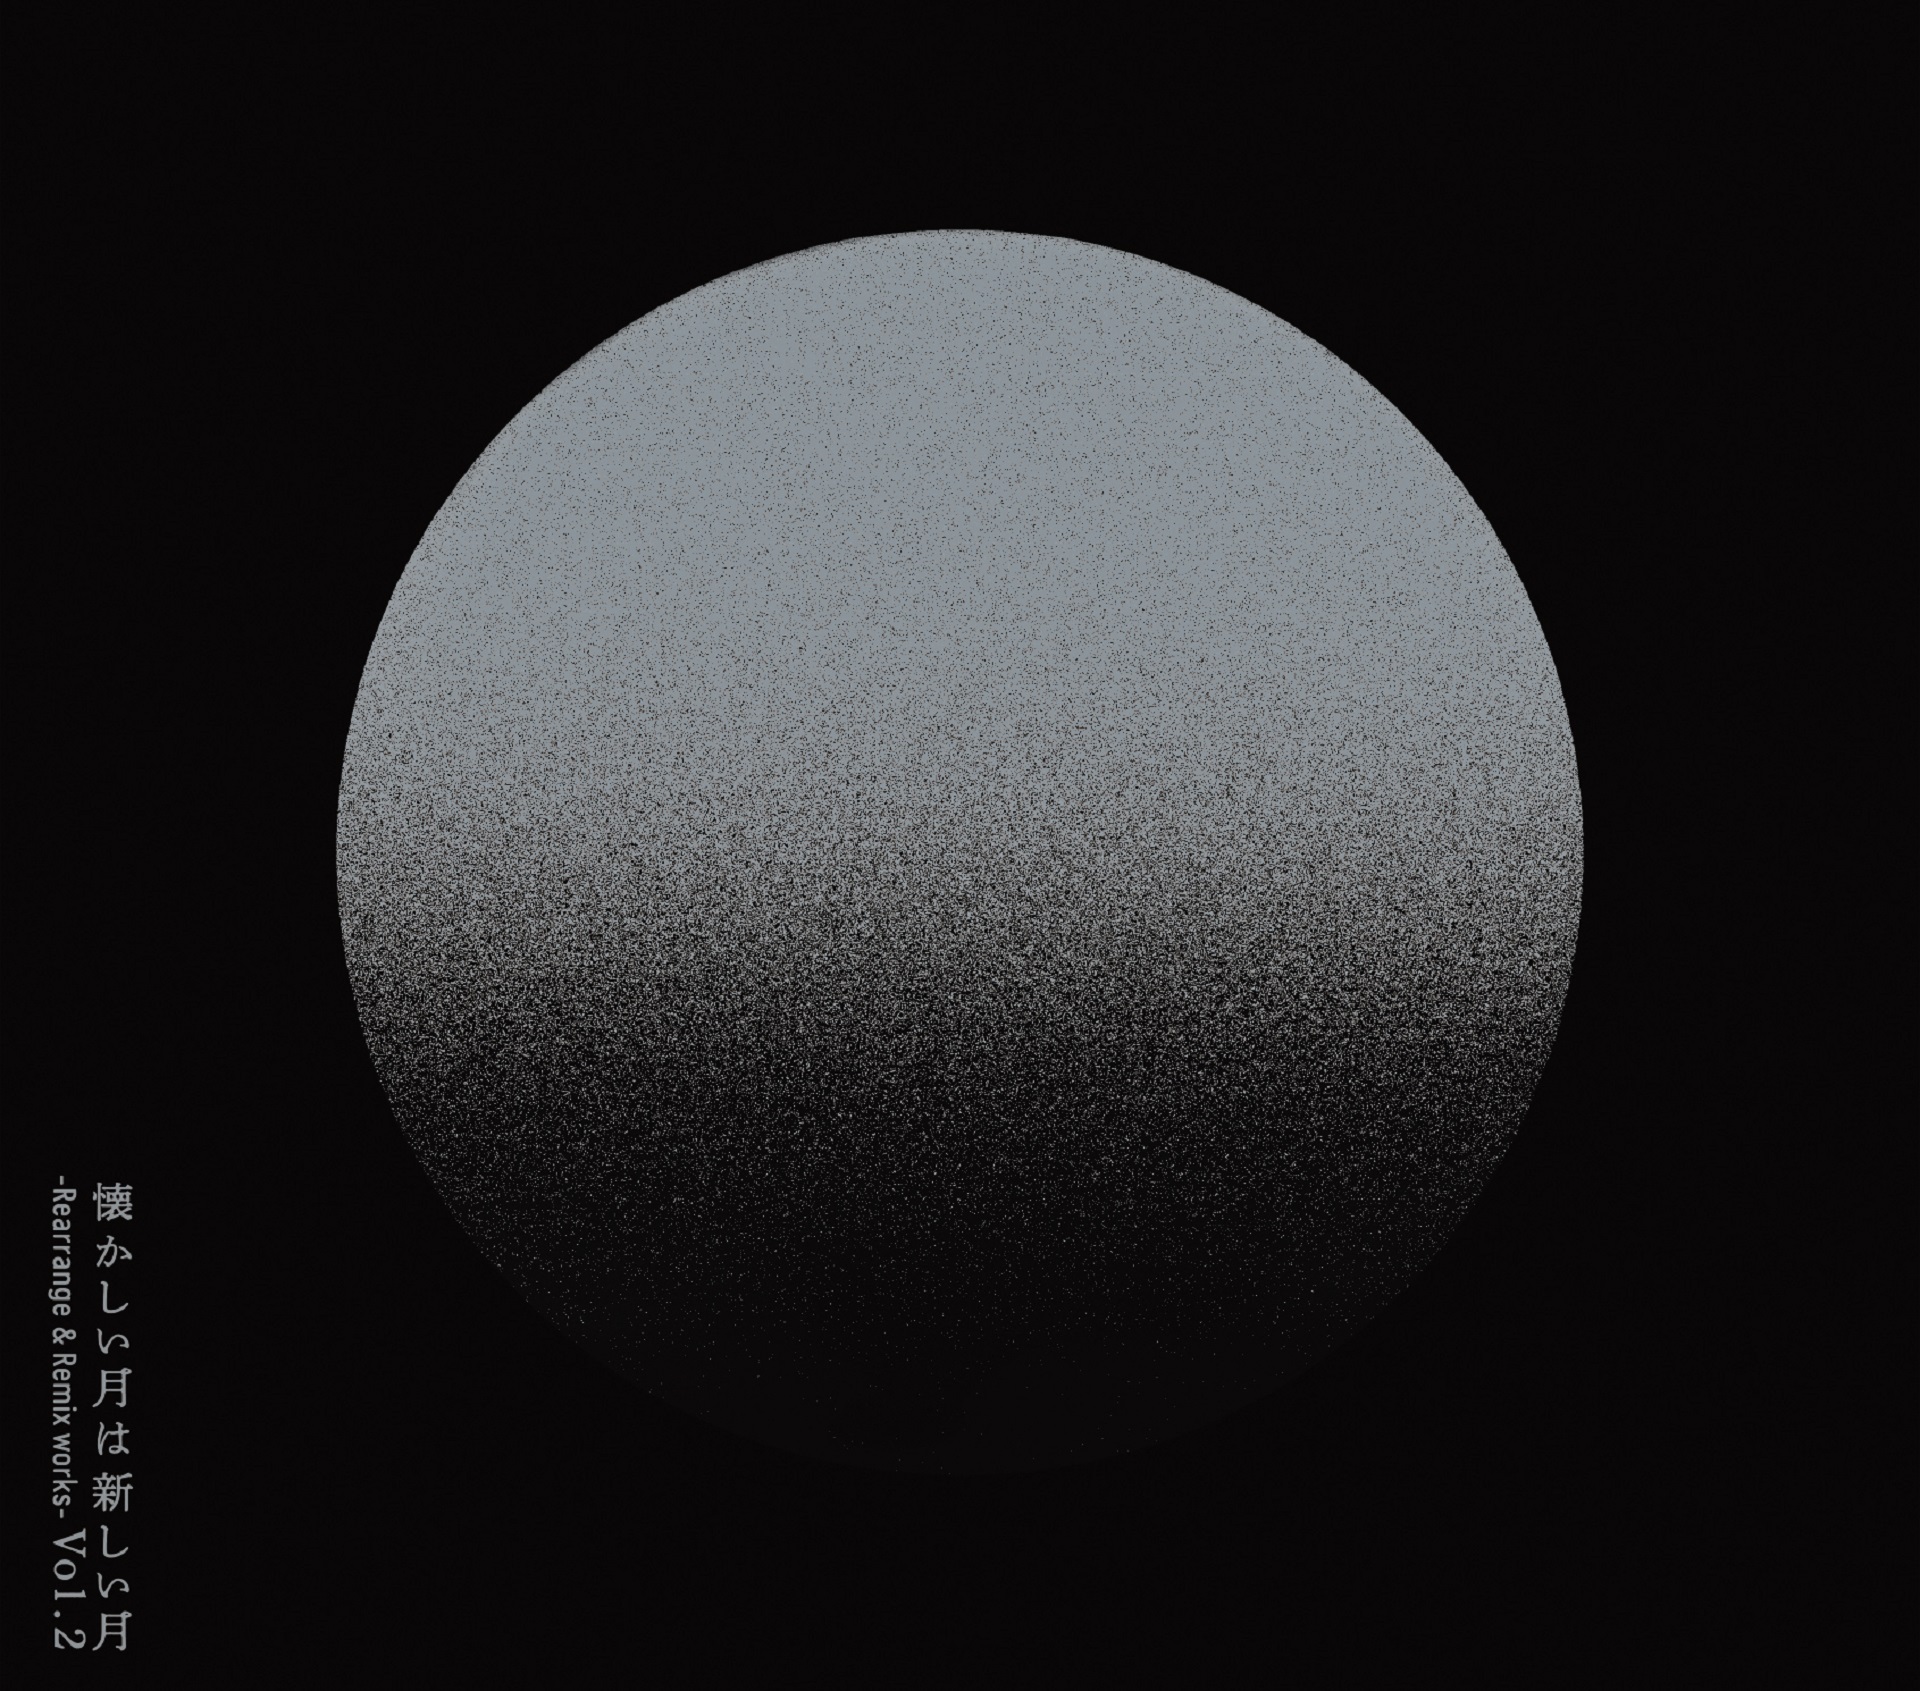 『懐かしい月は新しい月 Vol. 2 ~Rearrange & Remix works~』初回生産限定盤Bジャケット